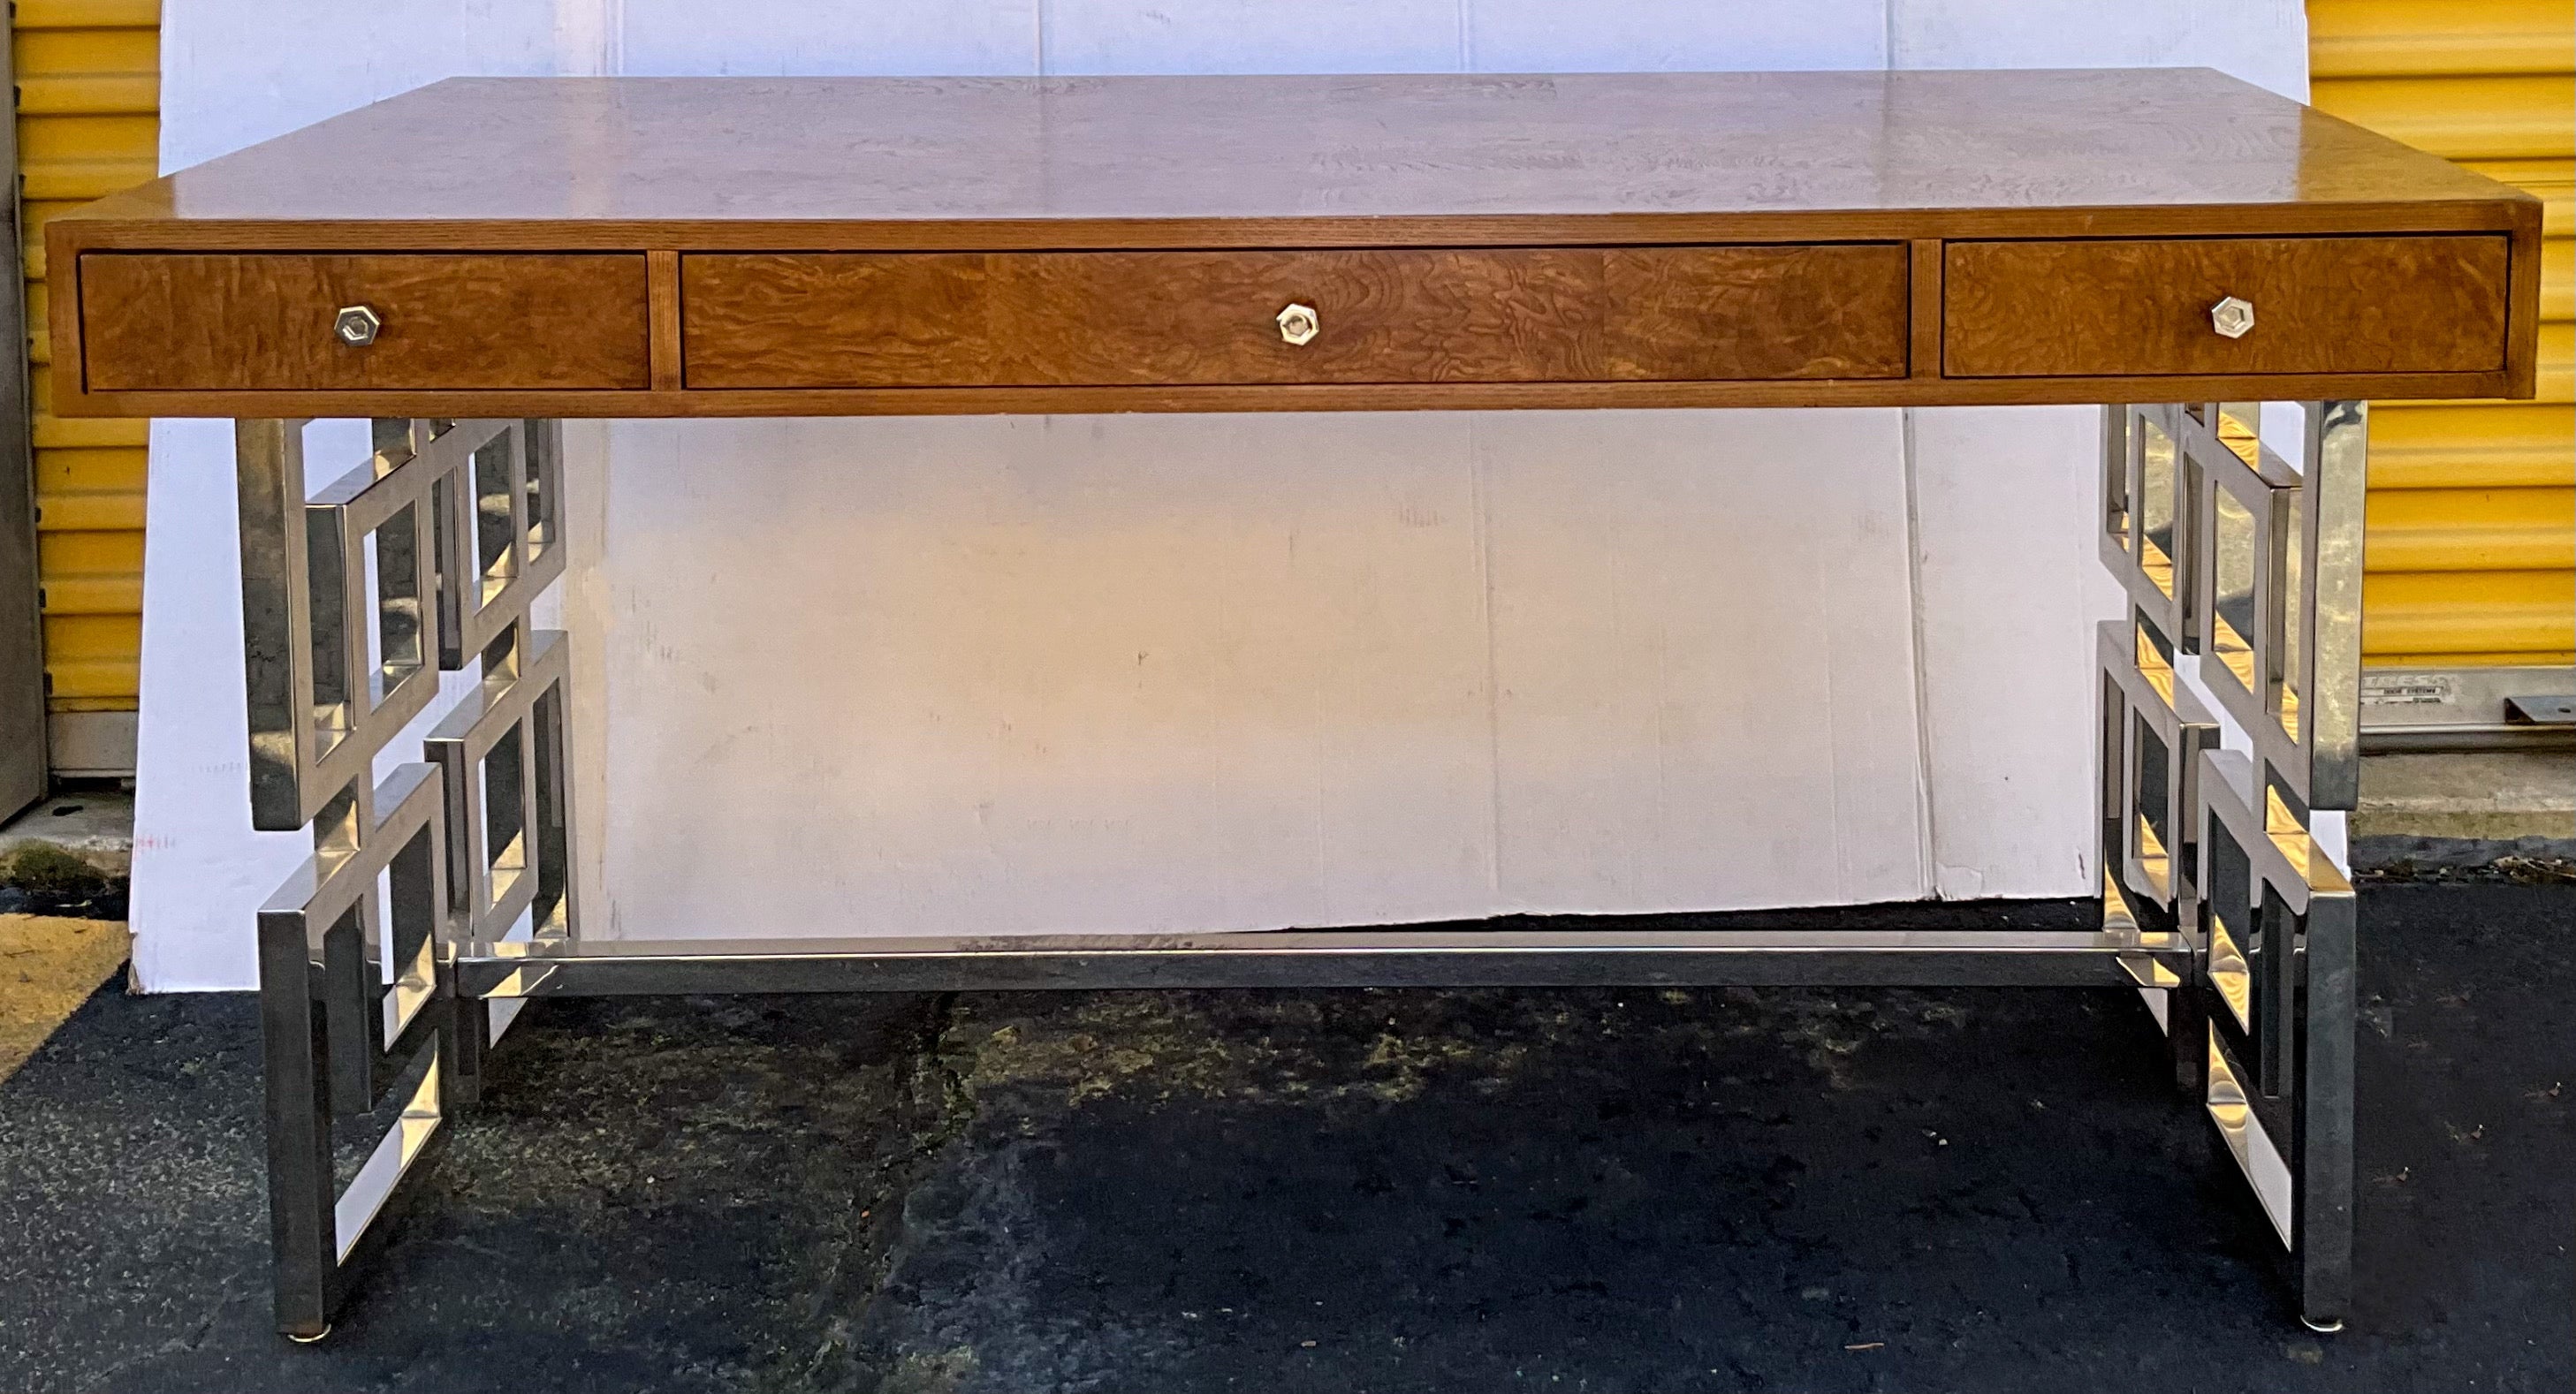 Dies ist ein Patchwork-Schreibtisch aus Wurzelholz und Chrom mit modernem Styling  von Bernhardt Furniture. Der Schreibtisch ist in sehr gutem Zustand und ist in der Schublade markiert. 

Mein Versand ist nur für die kontinentalen USA.